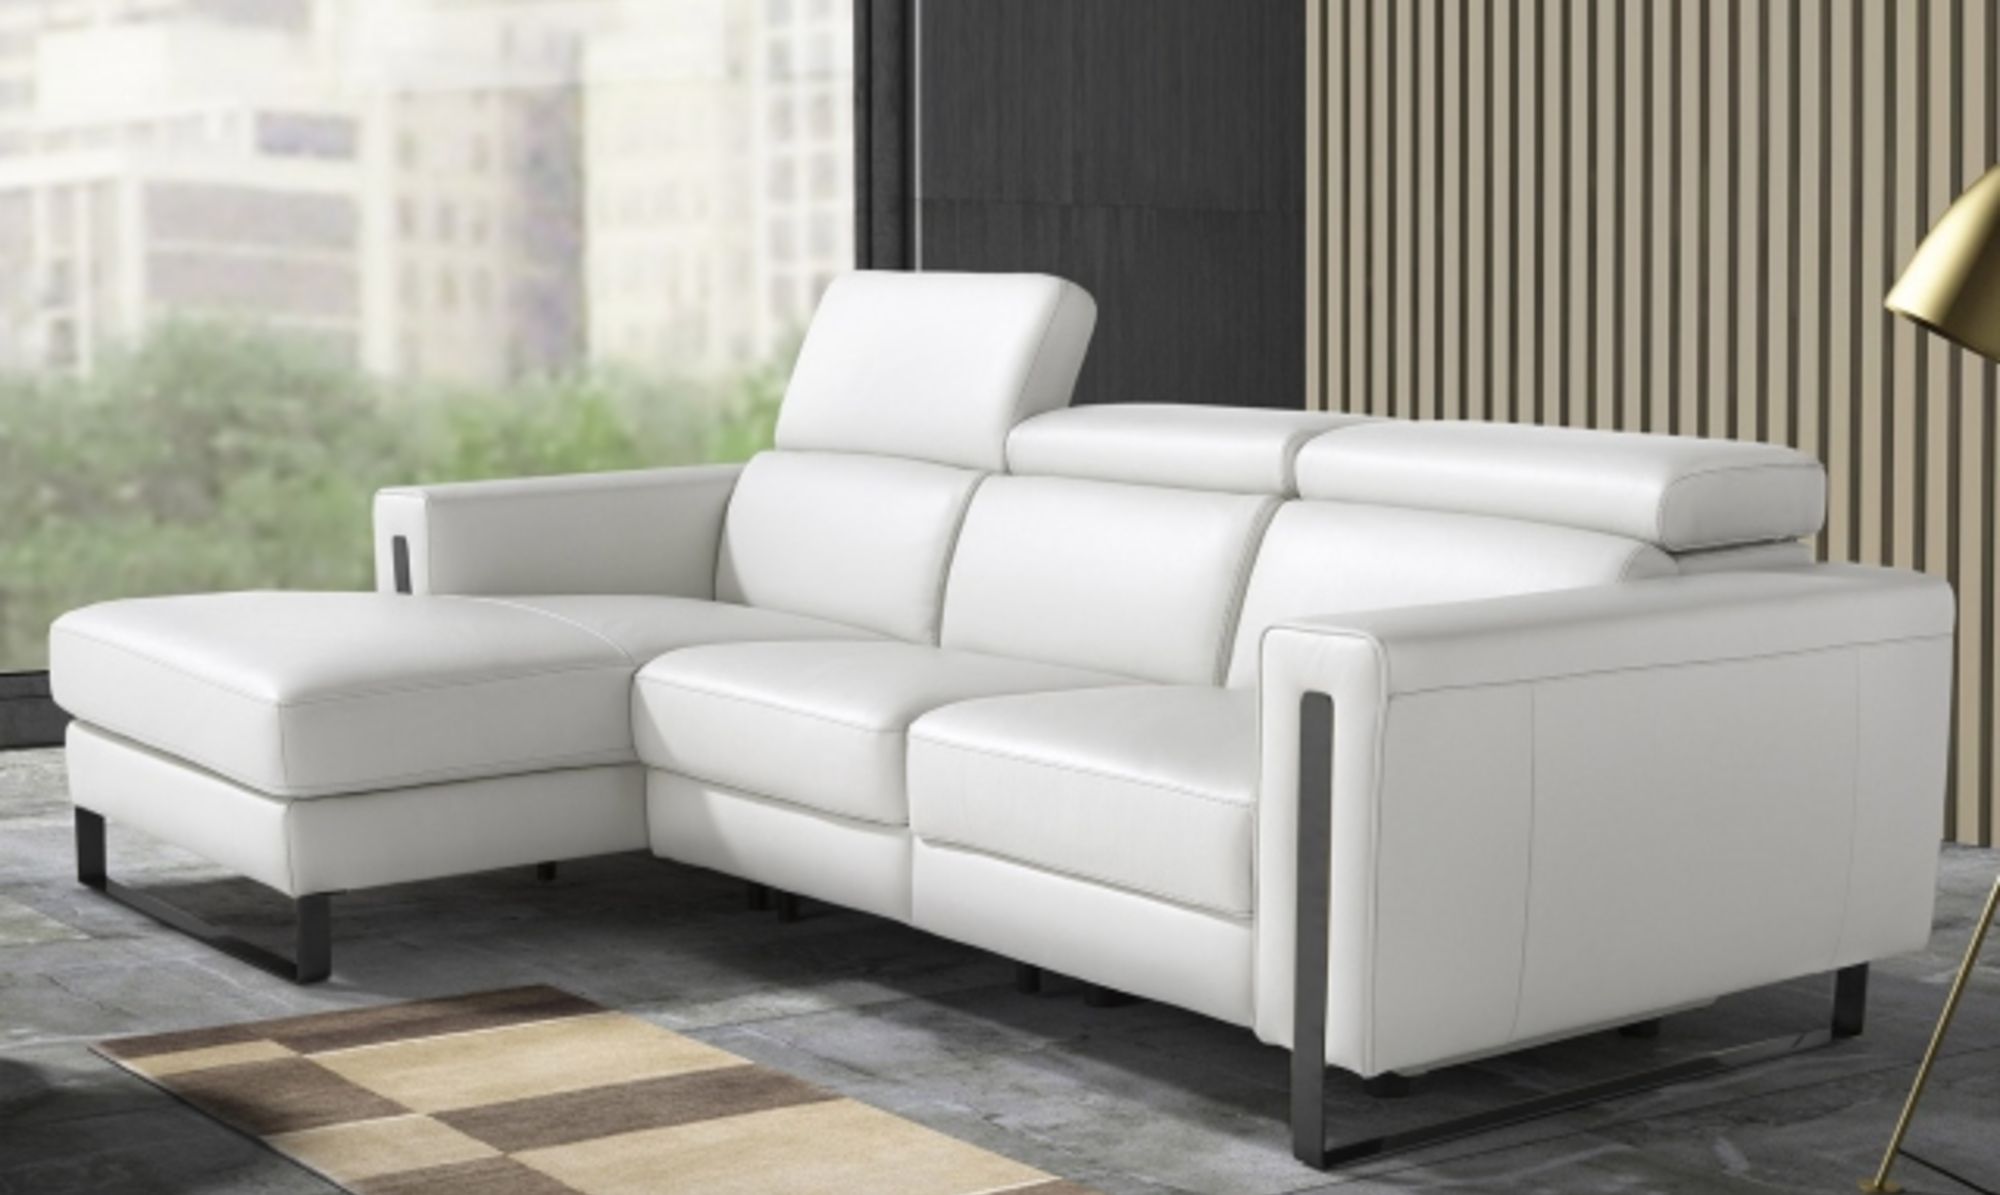 White Leather Sofa Fishpools Lifestyle, Modern White Leather Sofas